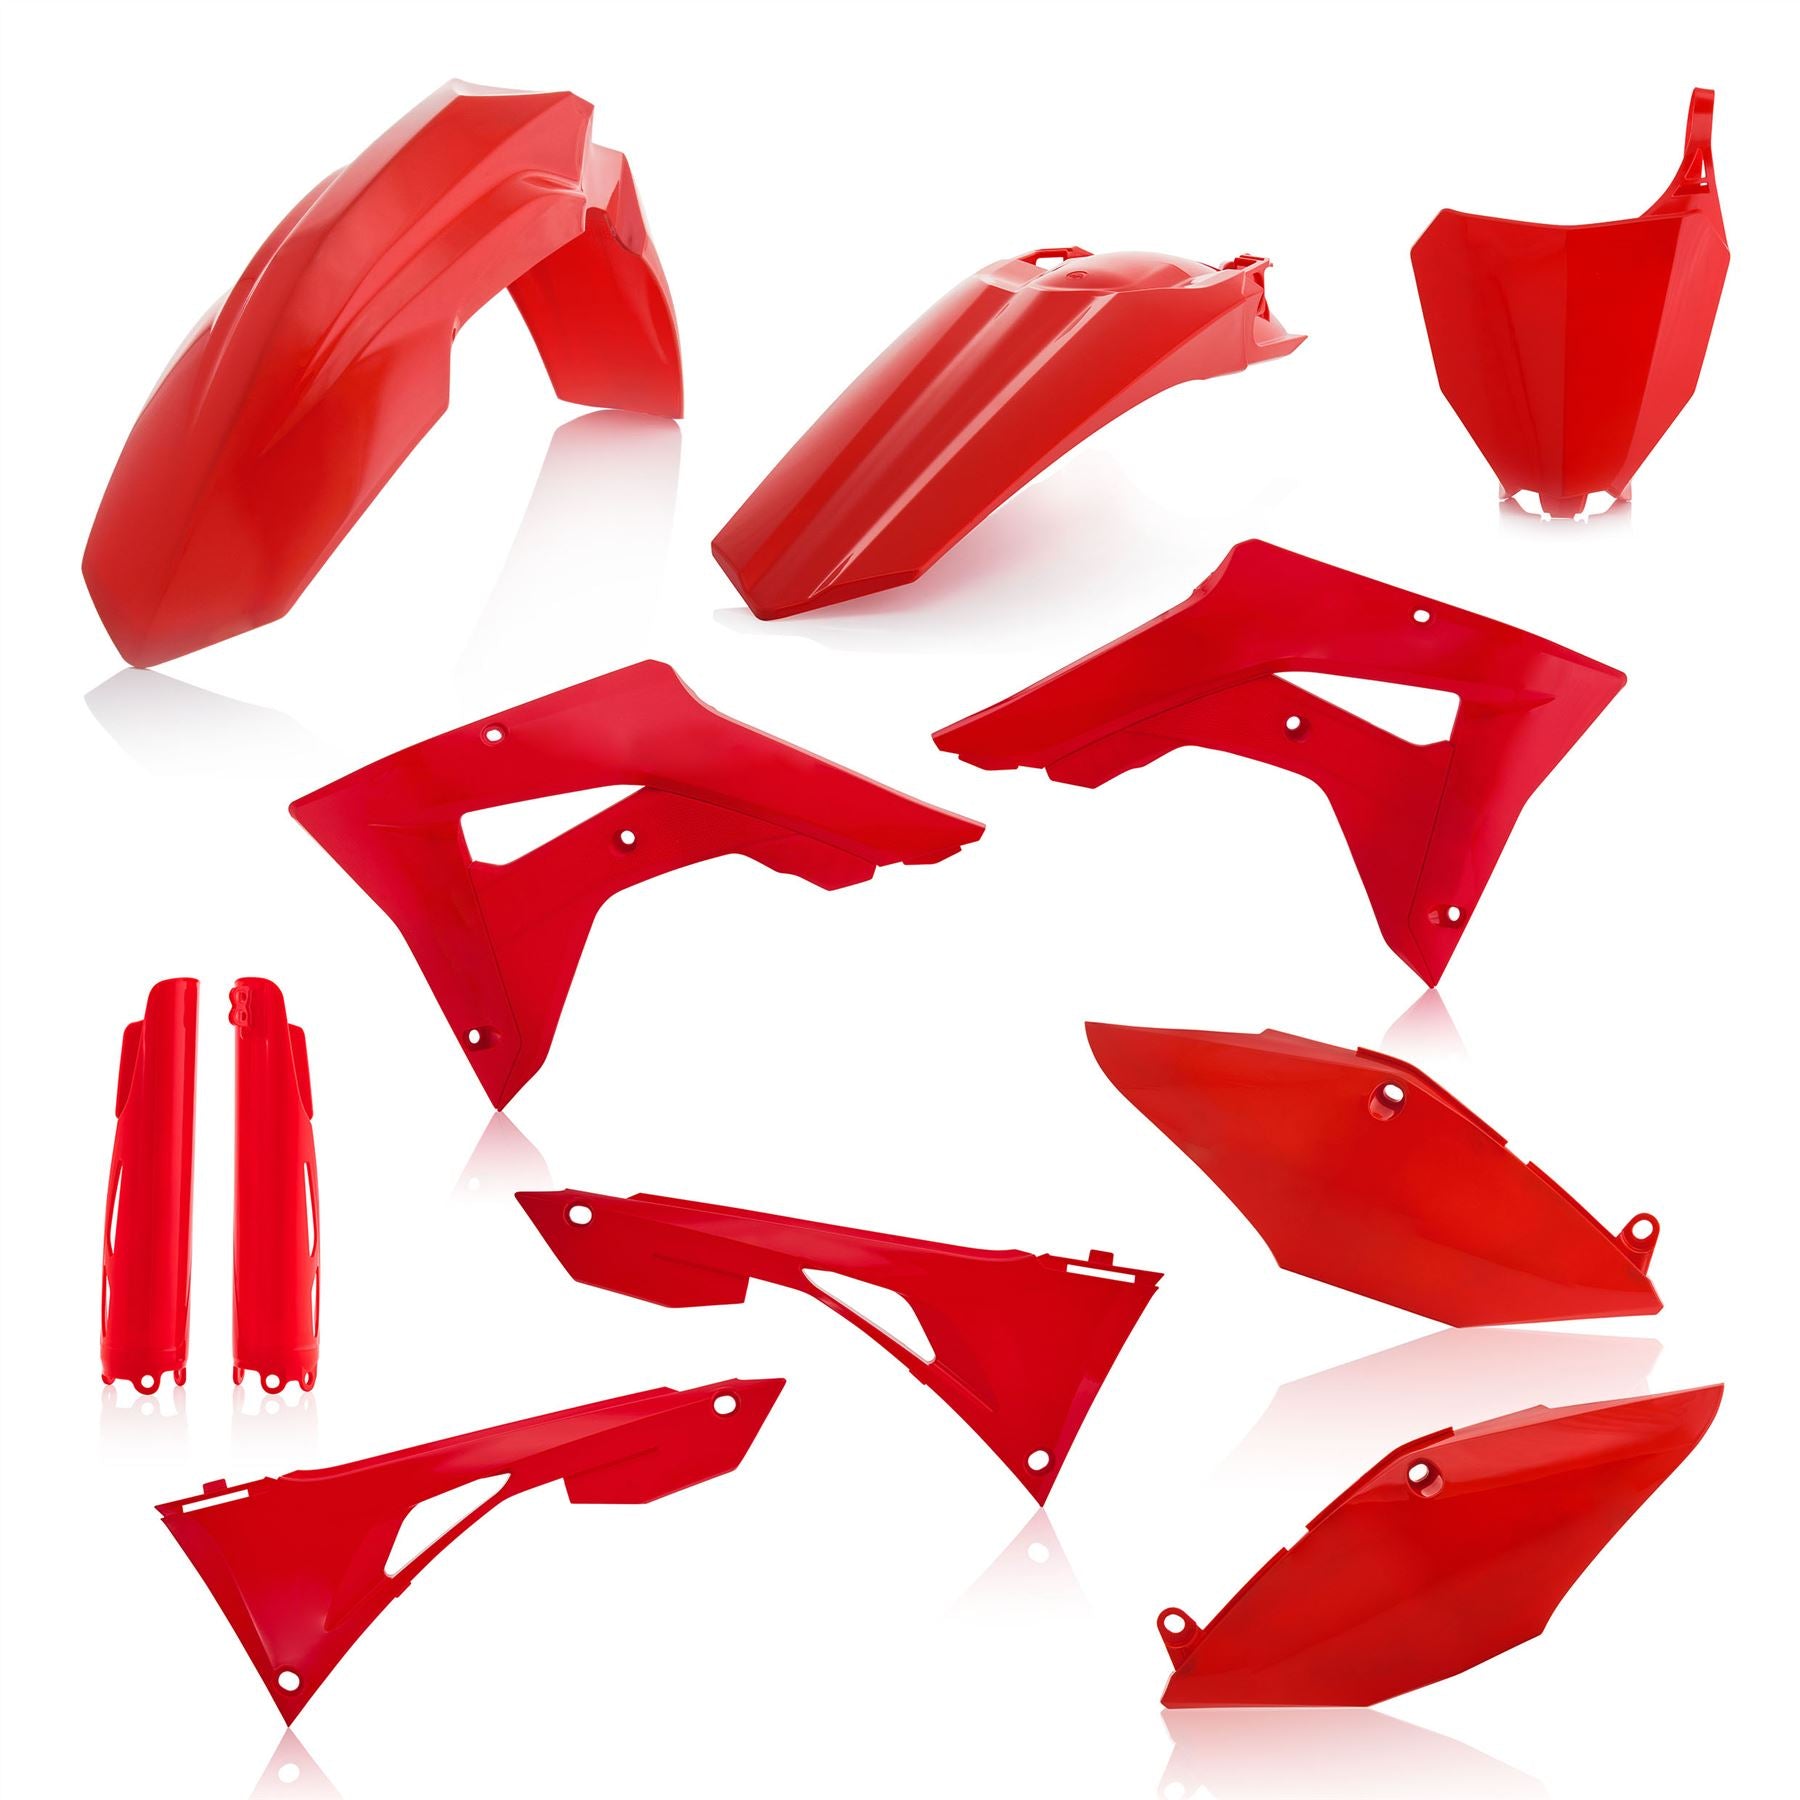 Acerbis Full Plastic Kit Red For Honda CRF 250 RX 2019-2021